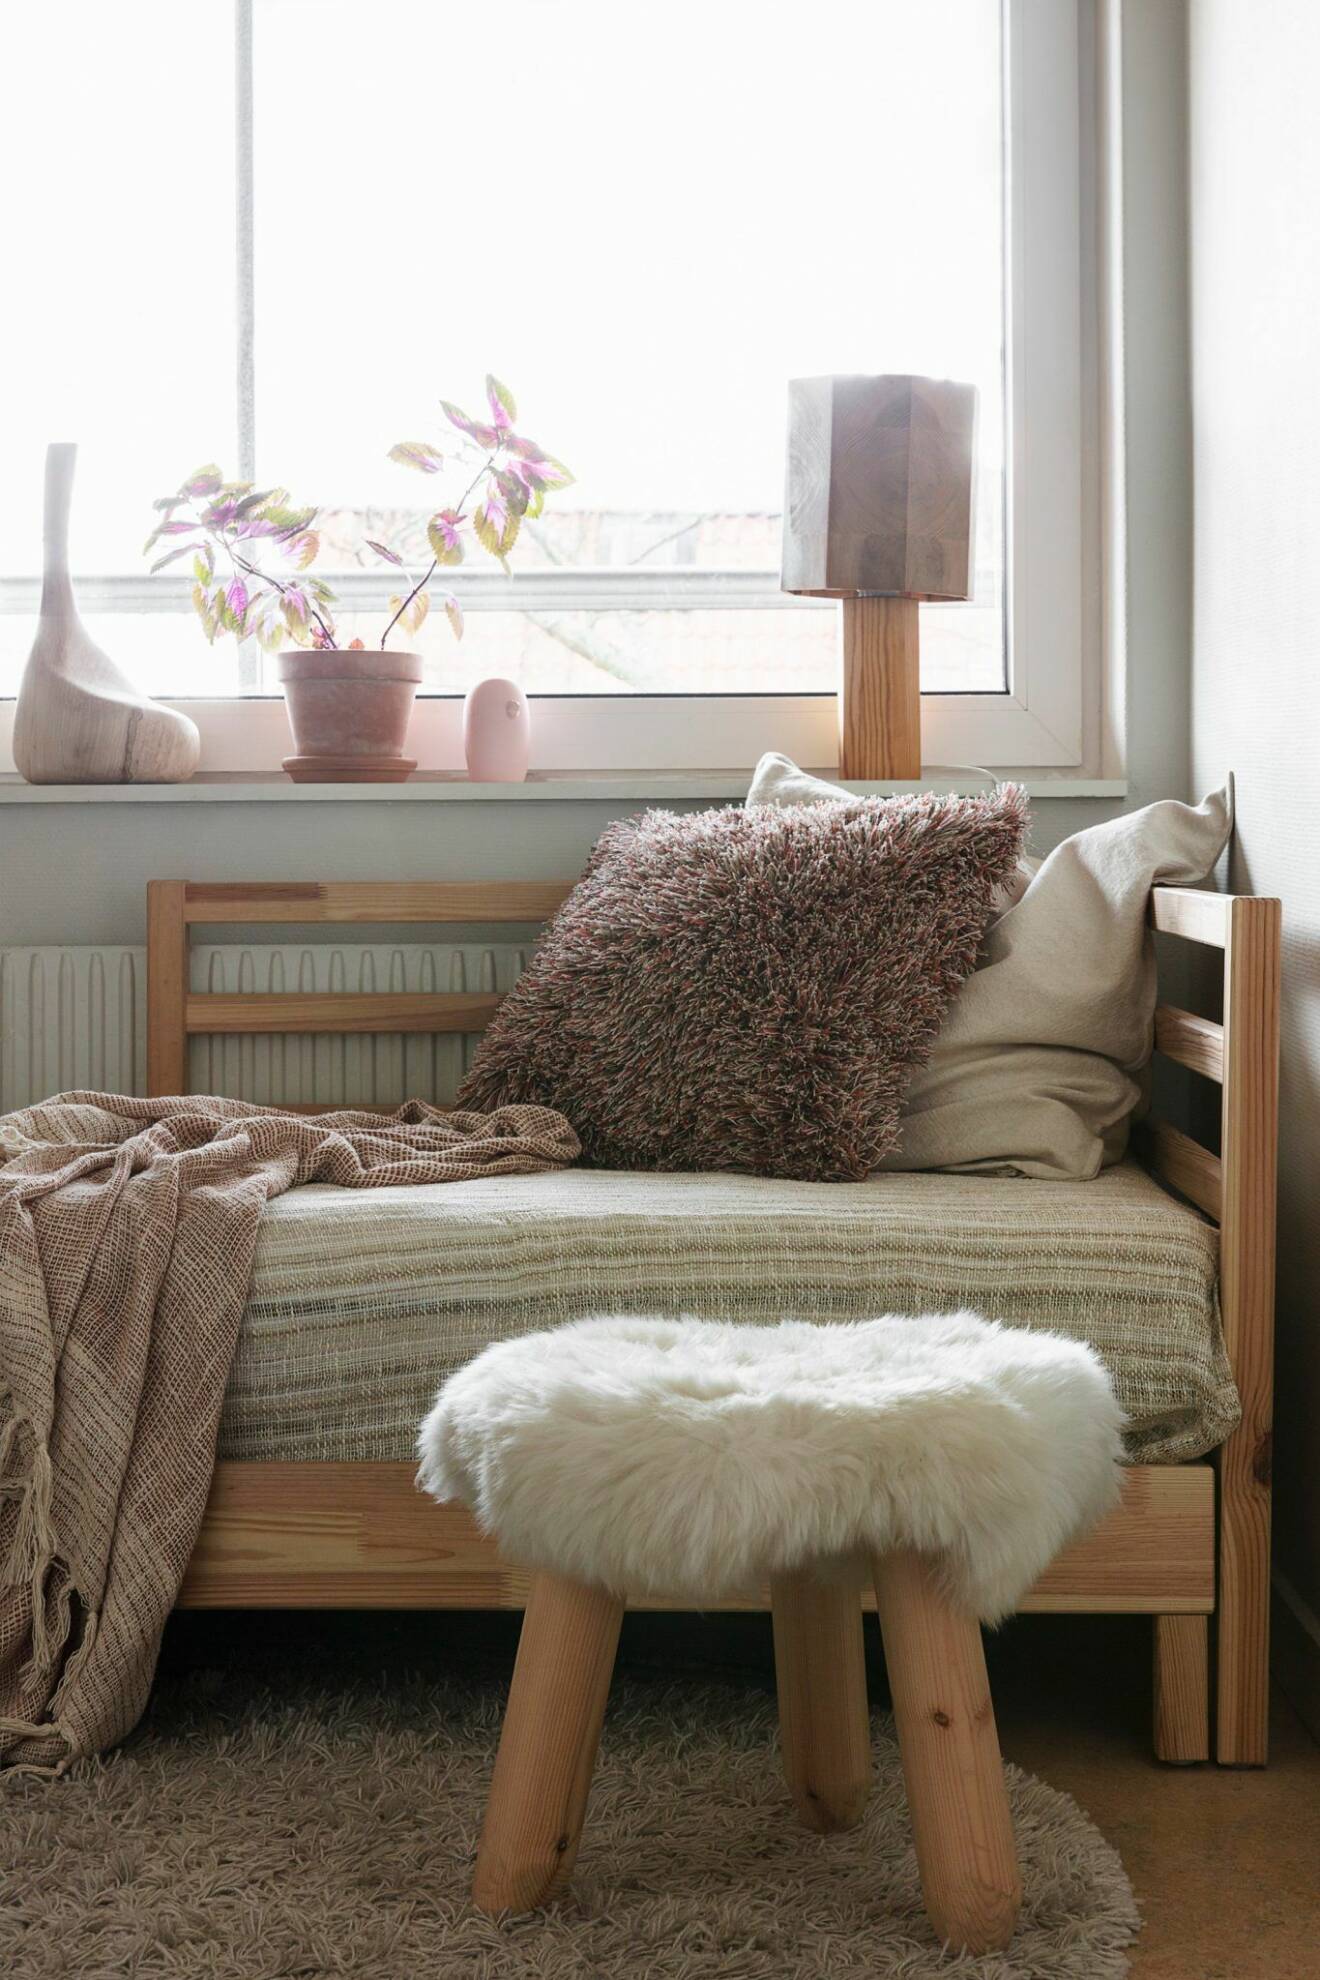 Fåtölj och textil hemma hos träkonstnären i Stockholm